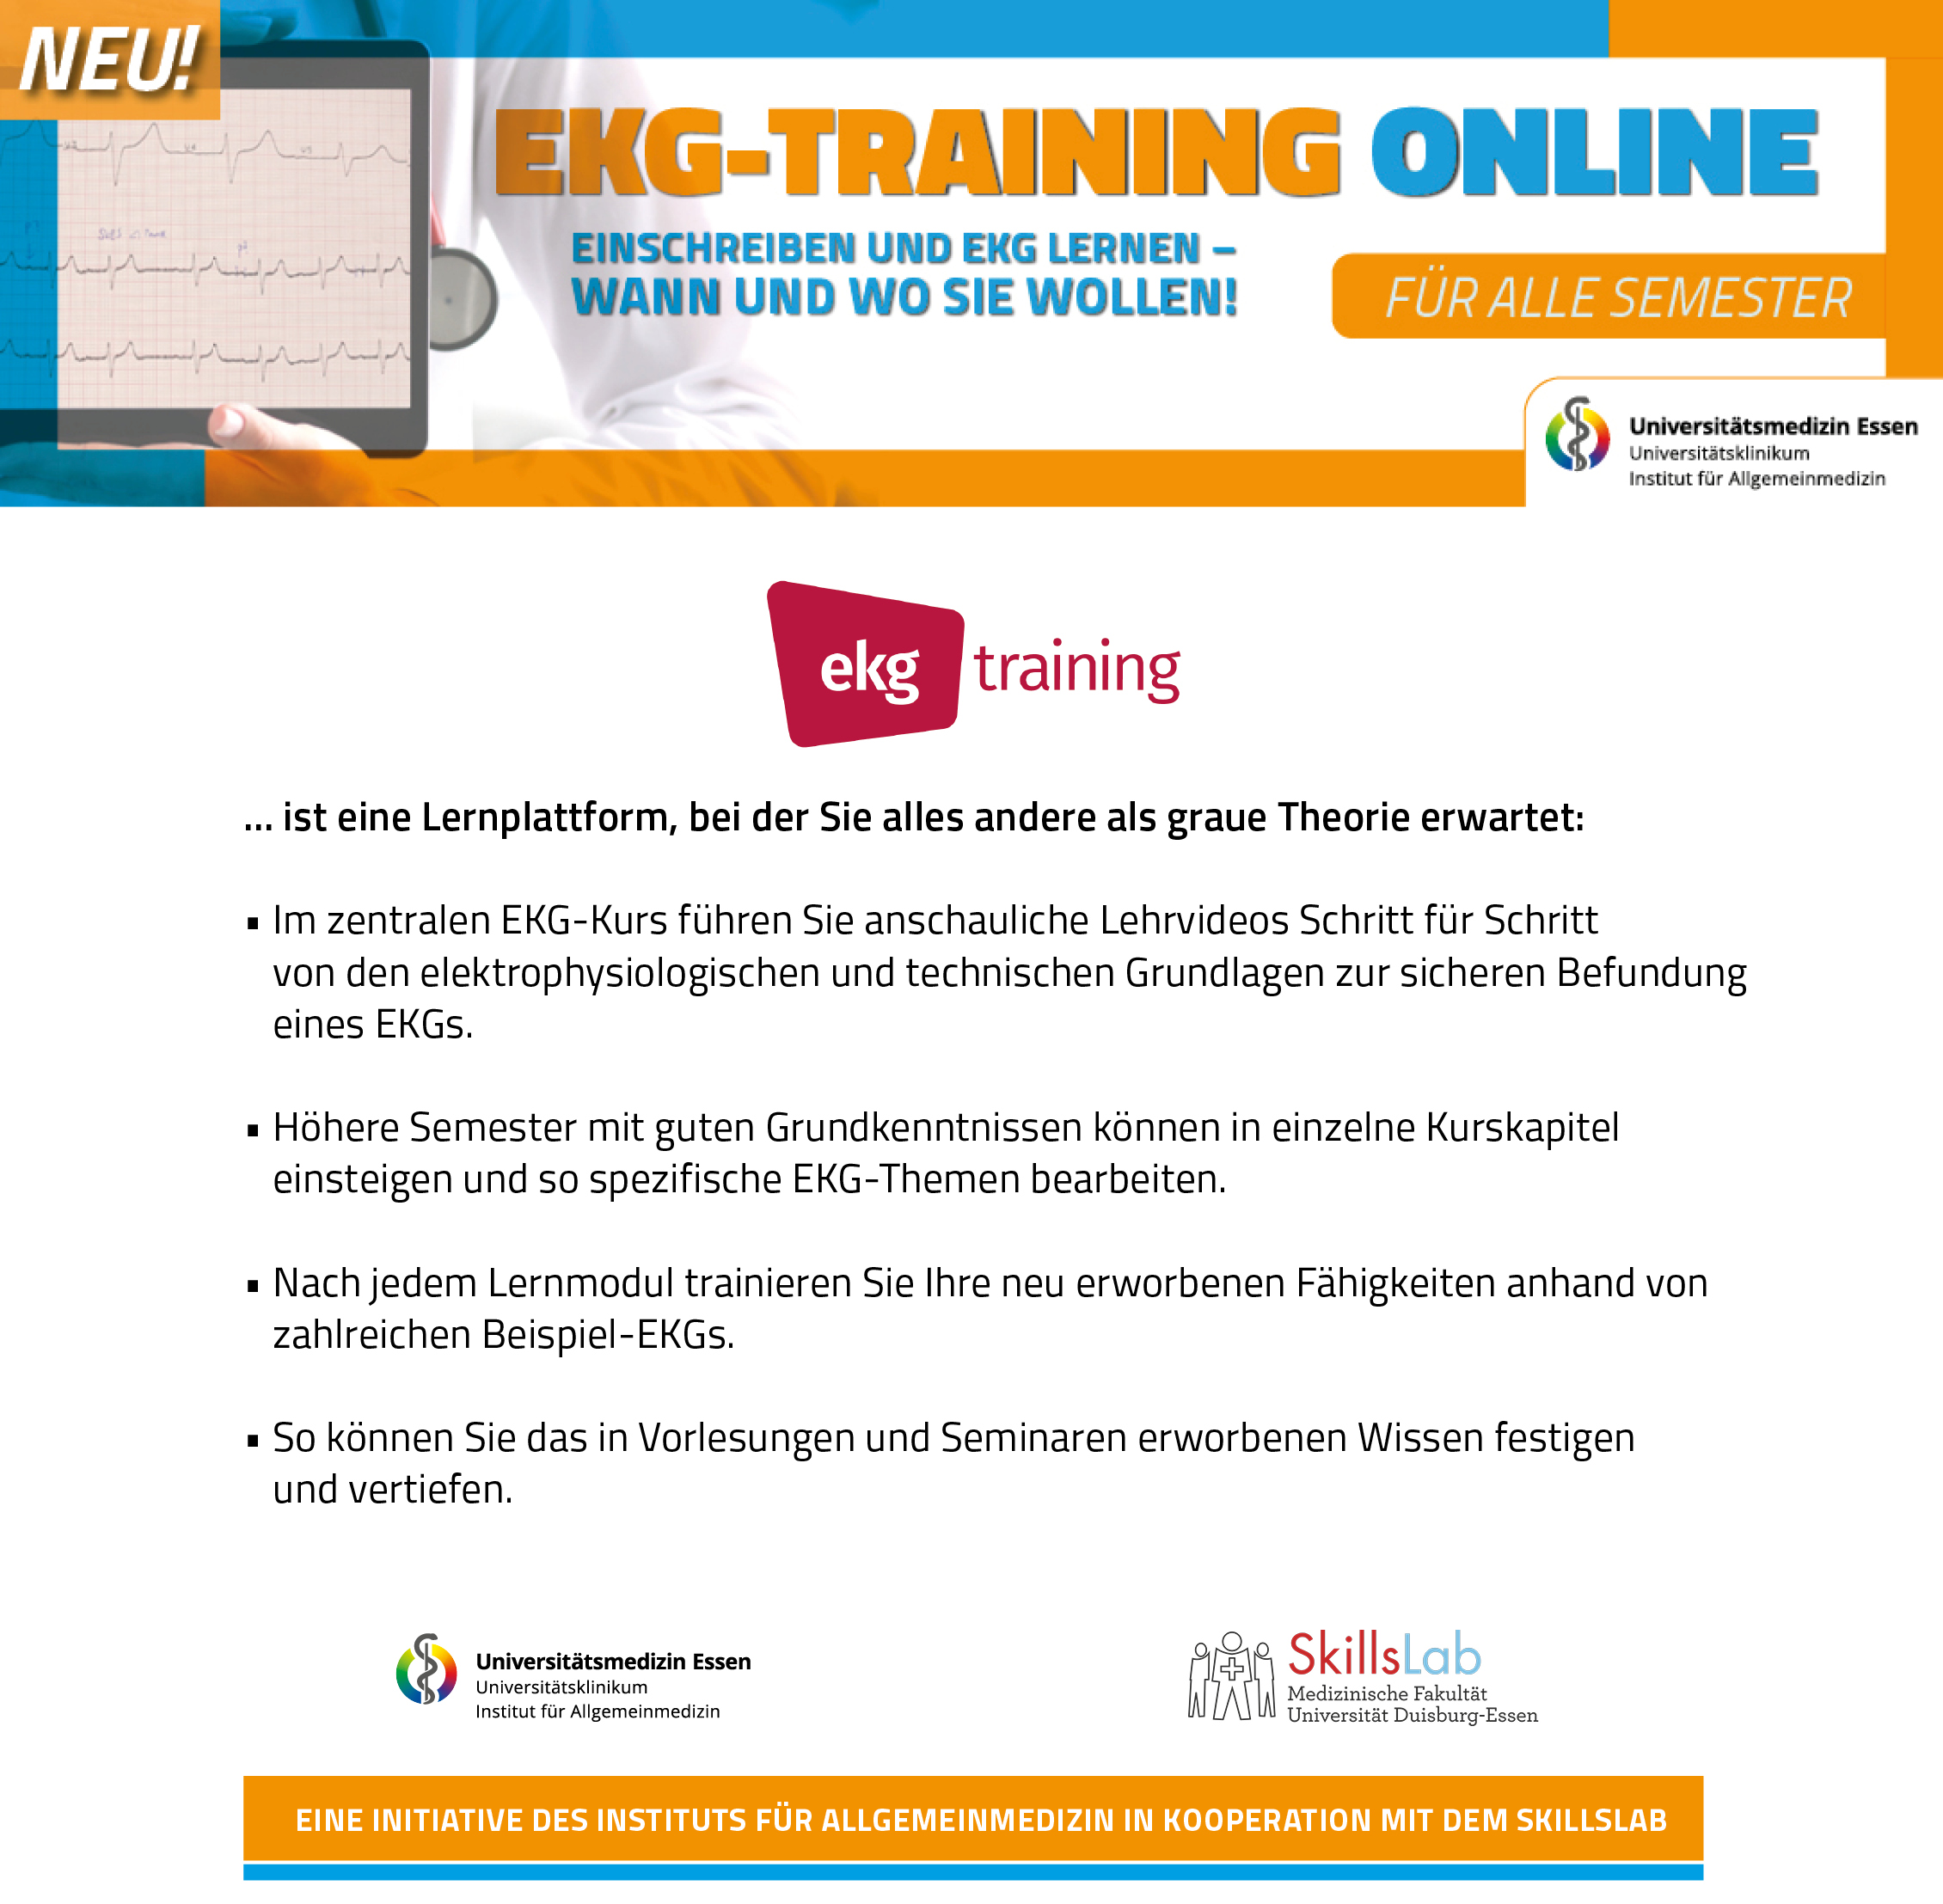 EKG-Training Medizinische Fakultät der Universität Duisburg Essen